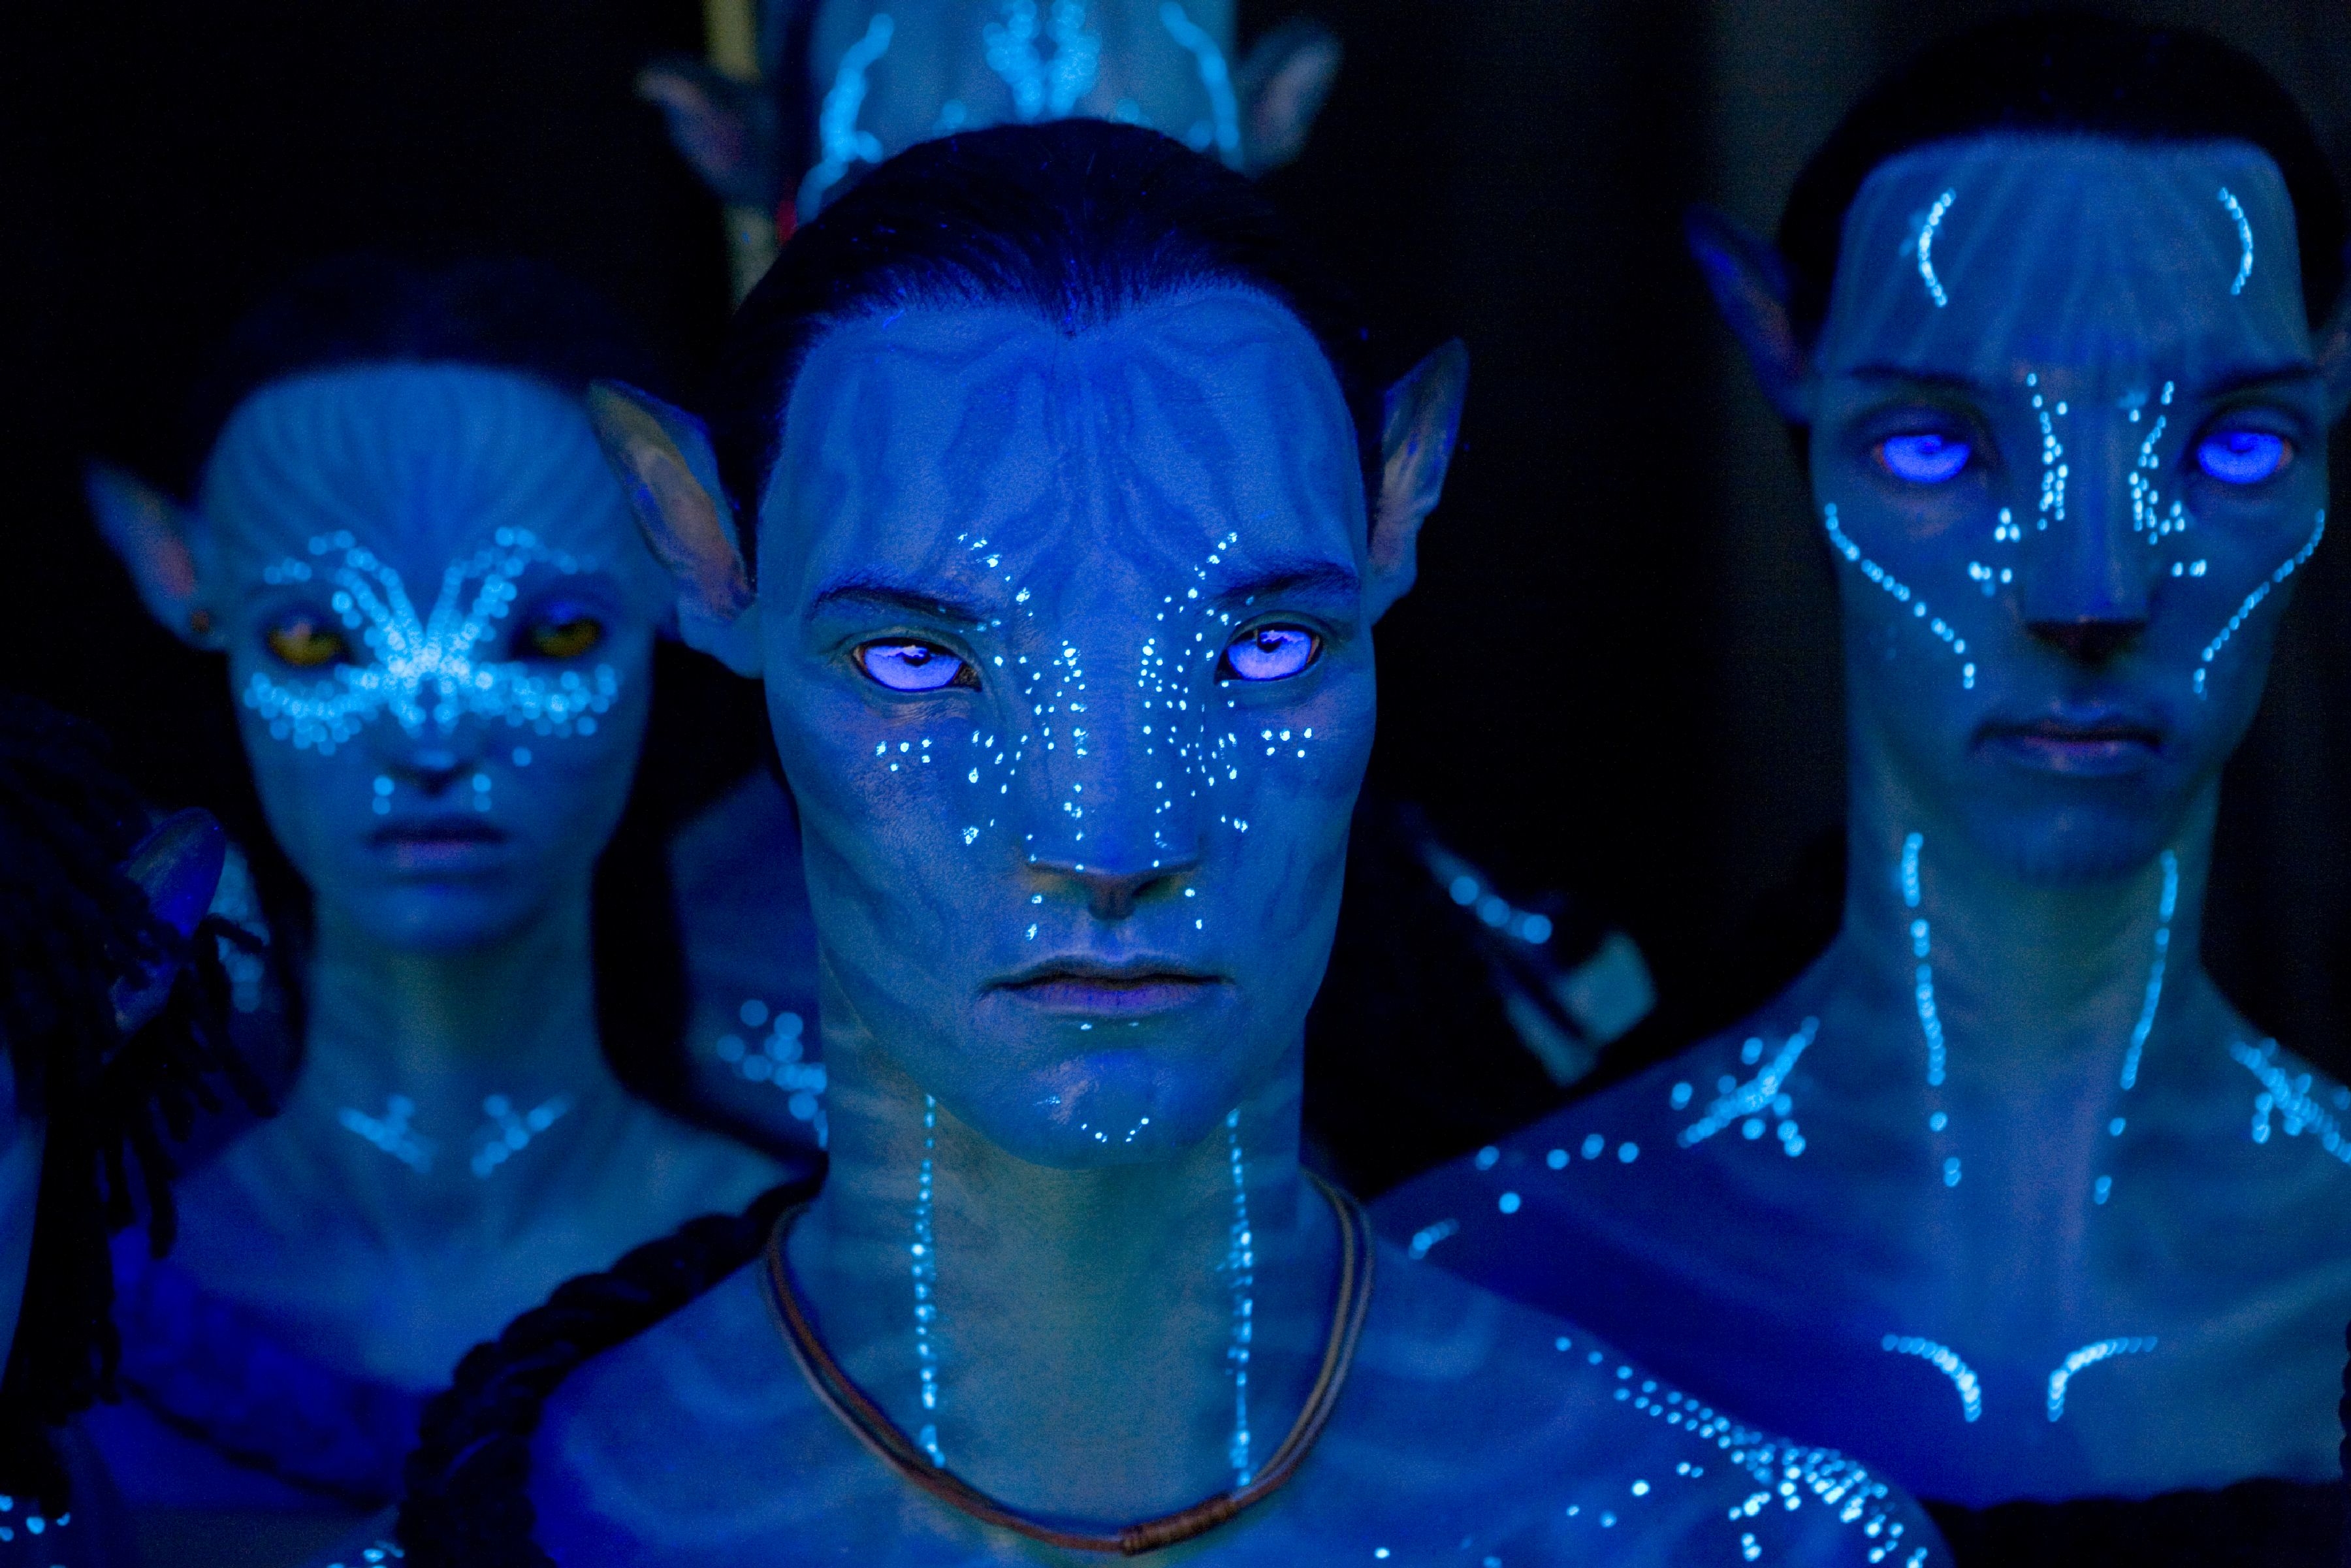 Showbiz Avatar returns to cinemas on Sept 22 in 4K High Dynamic Range